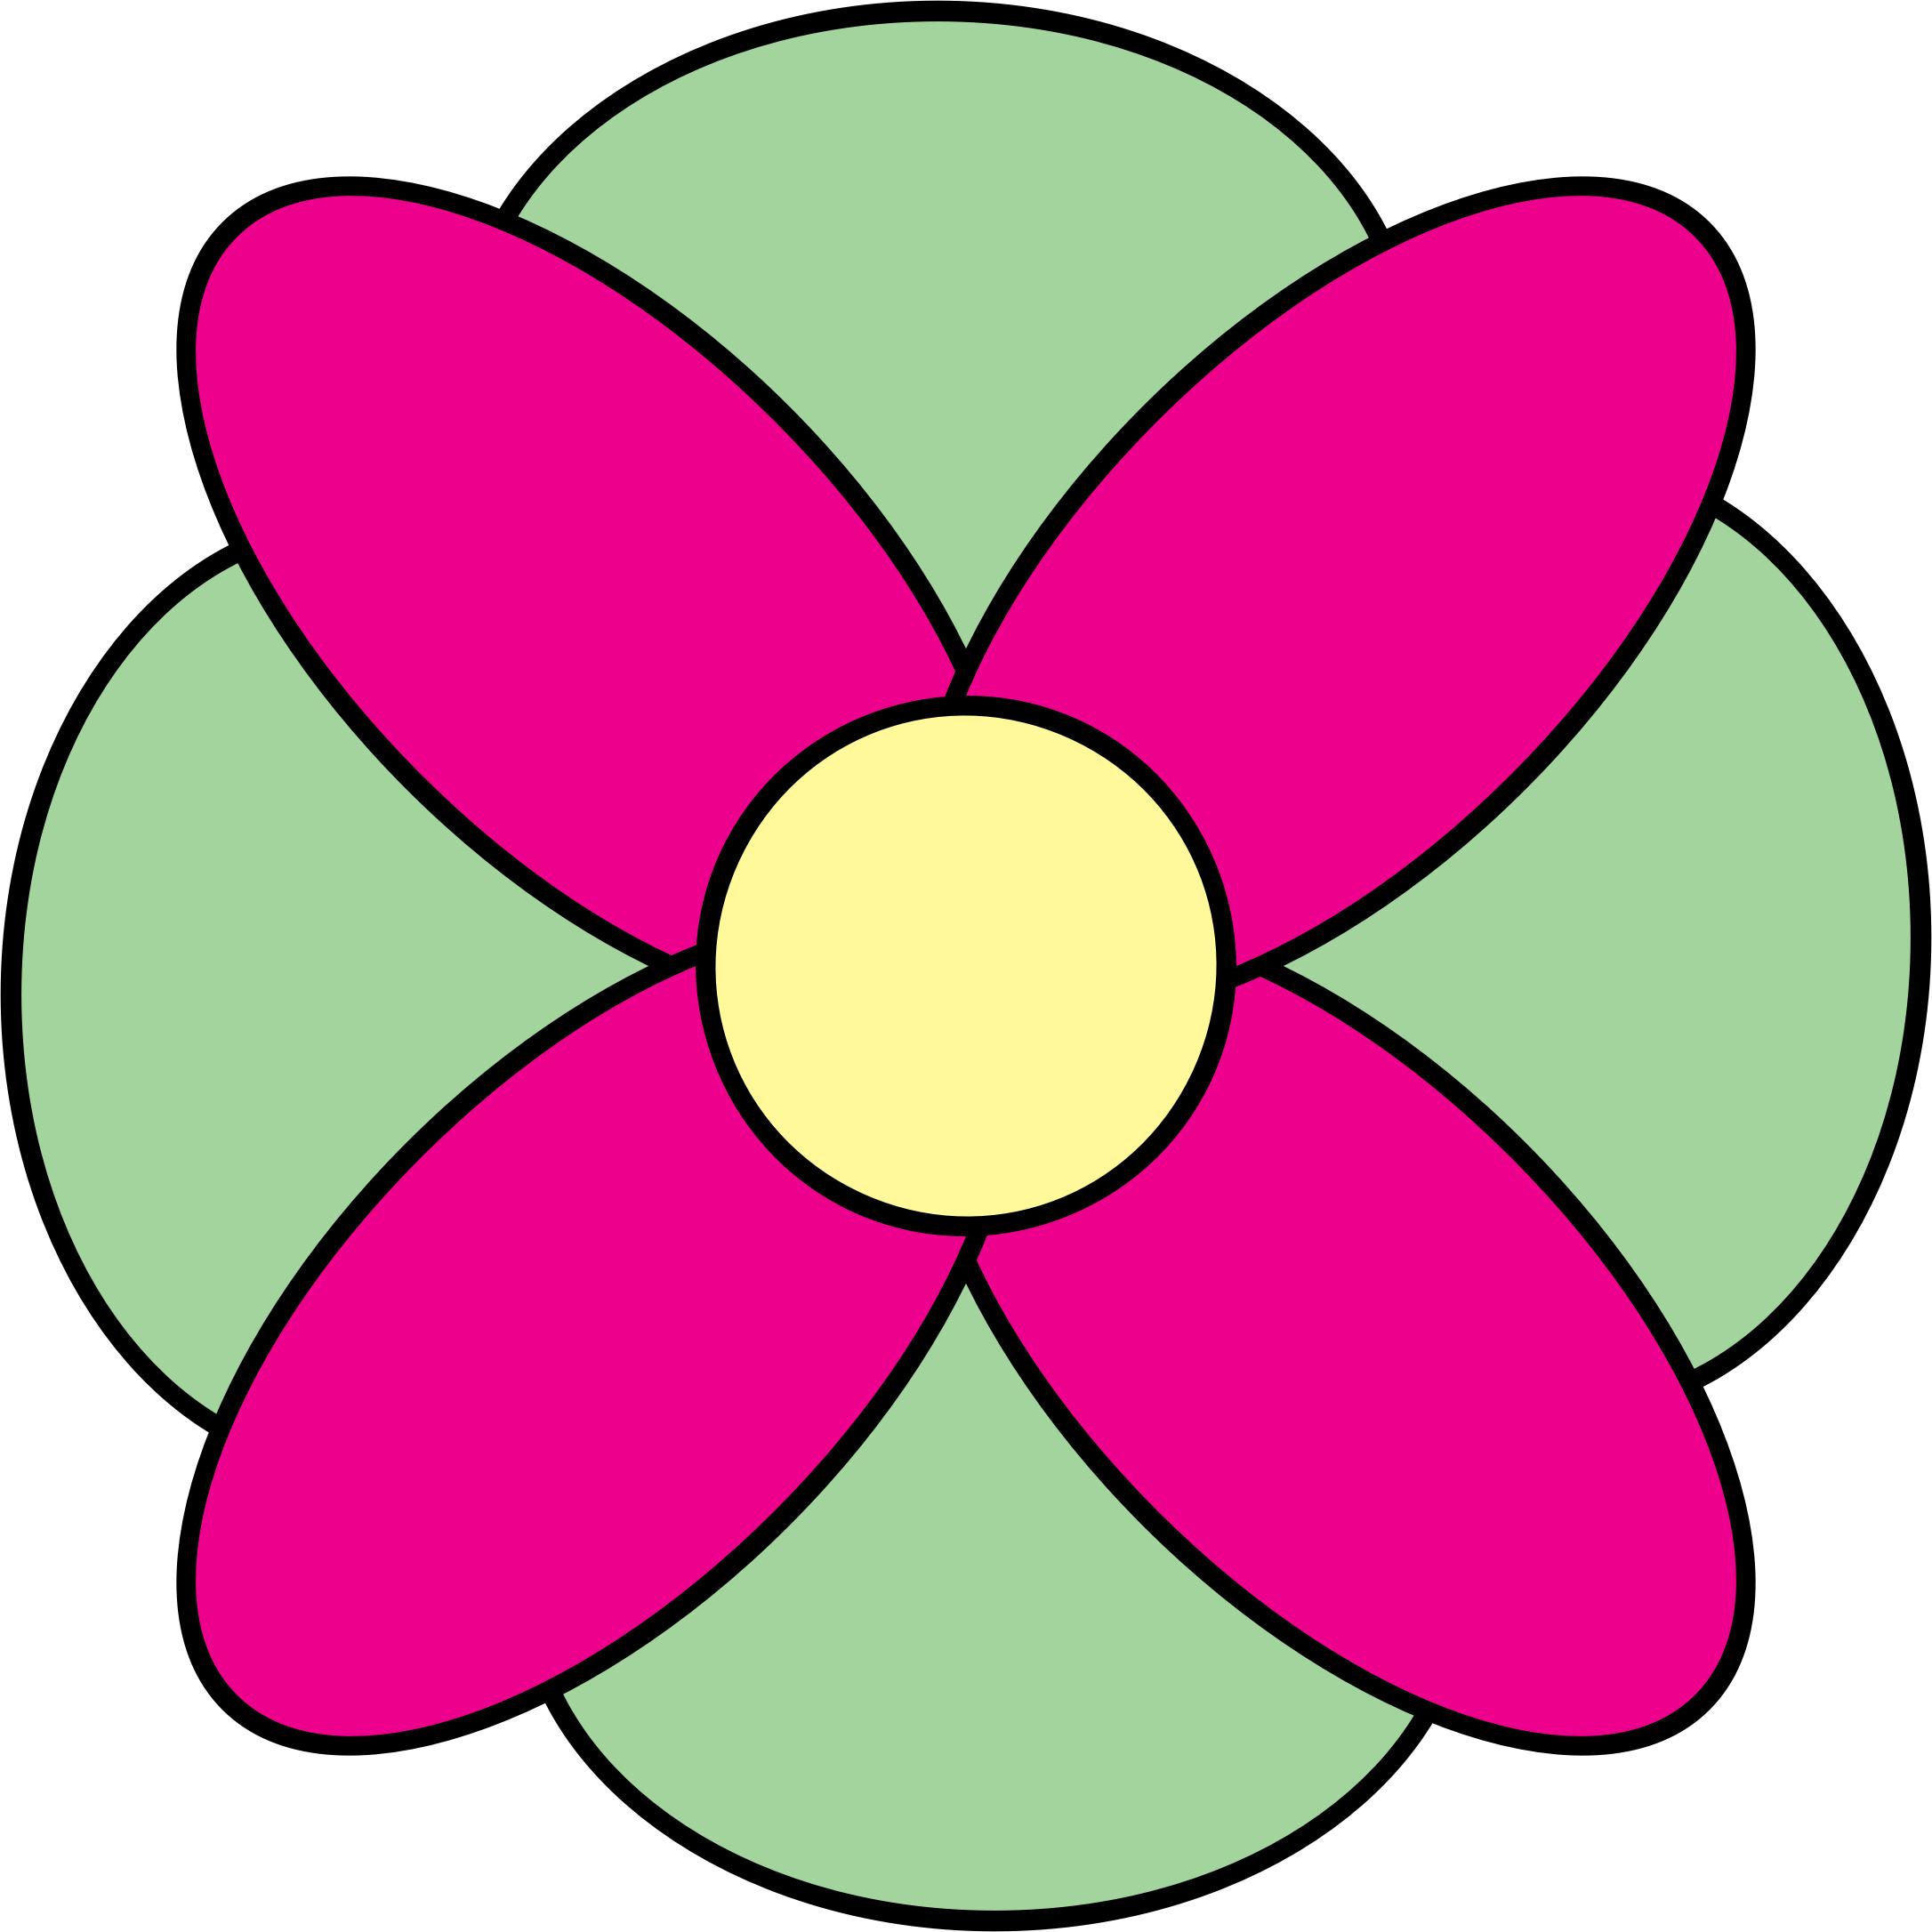 4 Petal Flower Doodle PNG icons